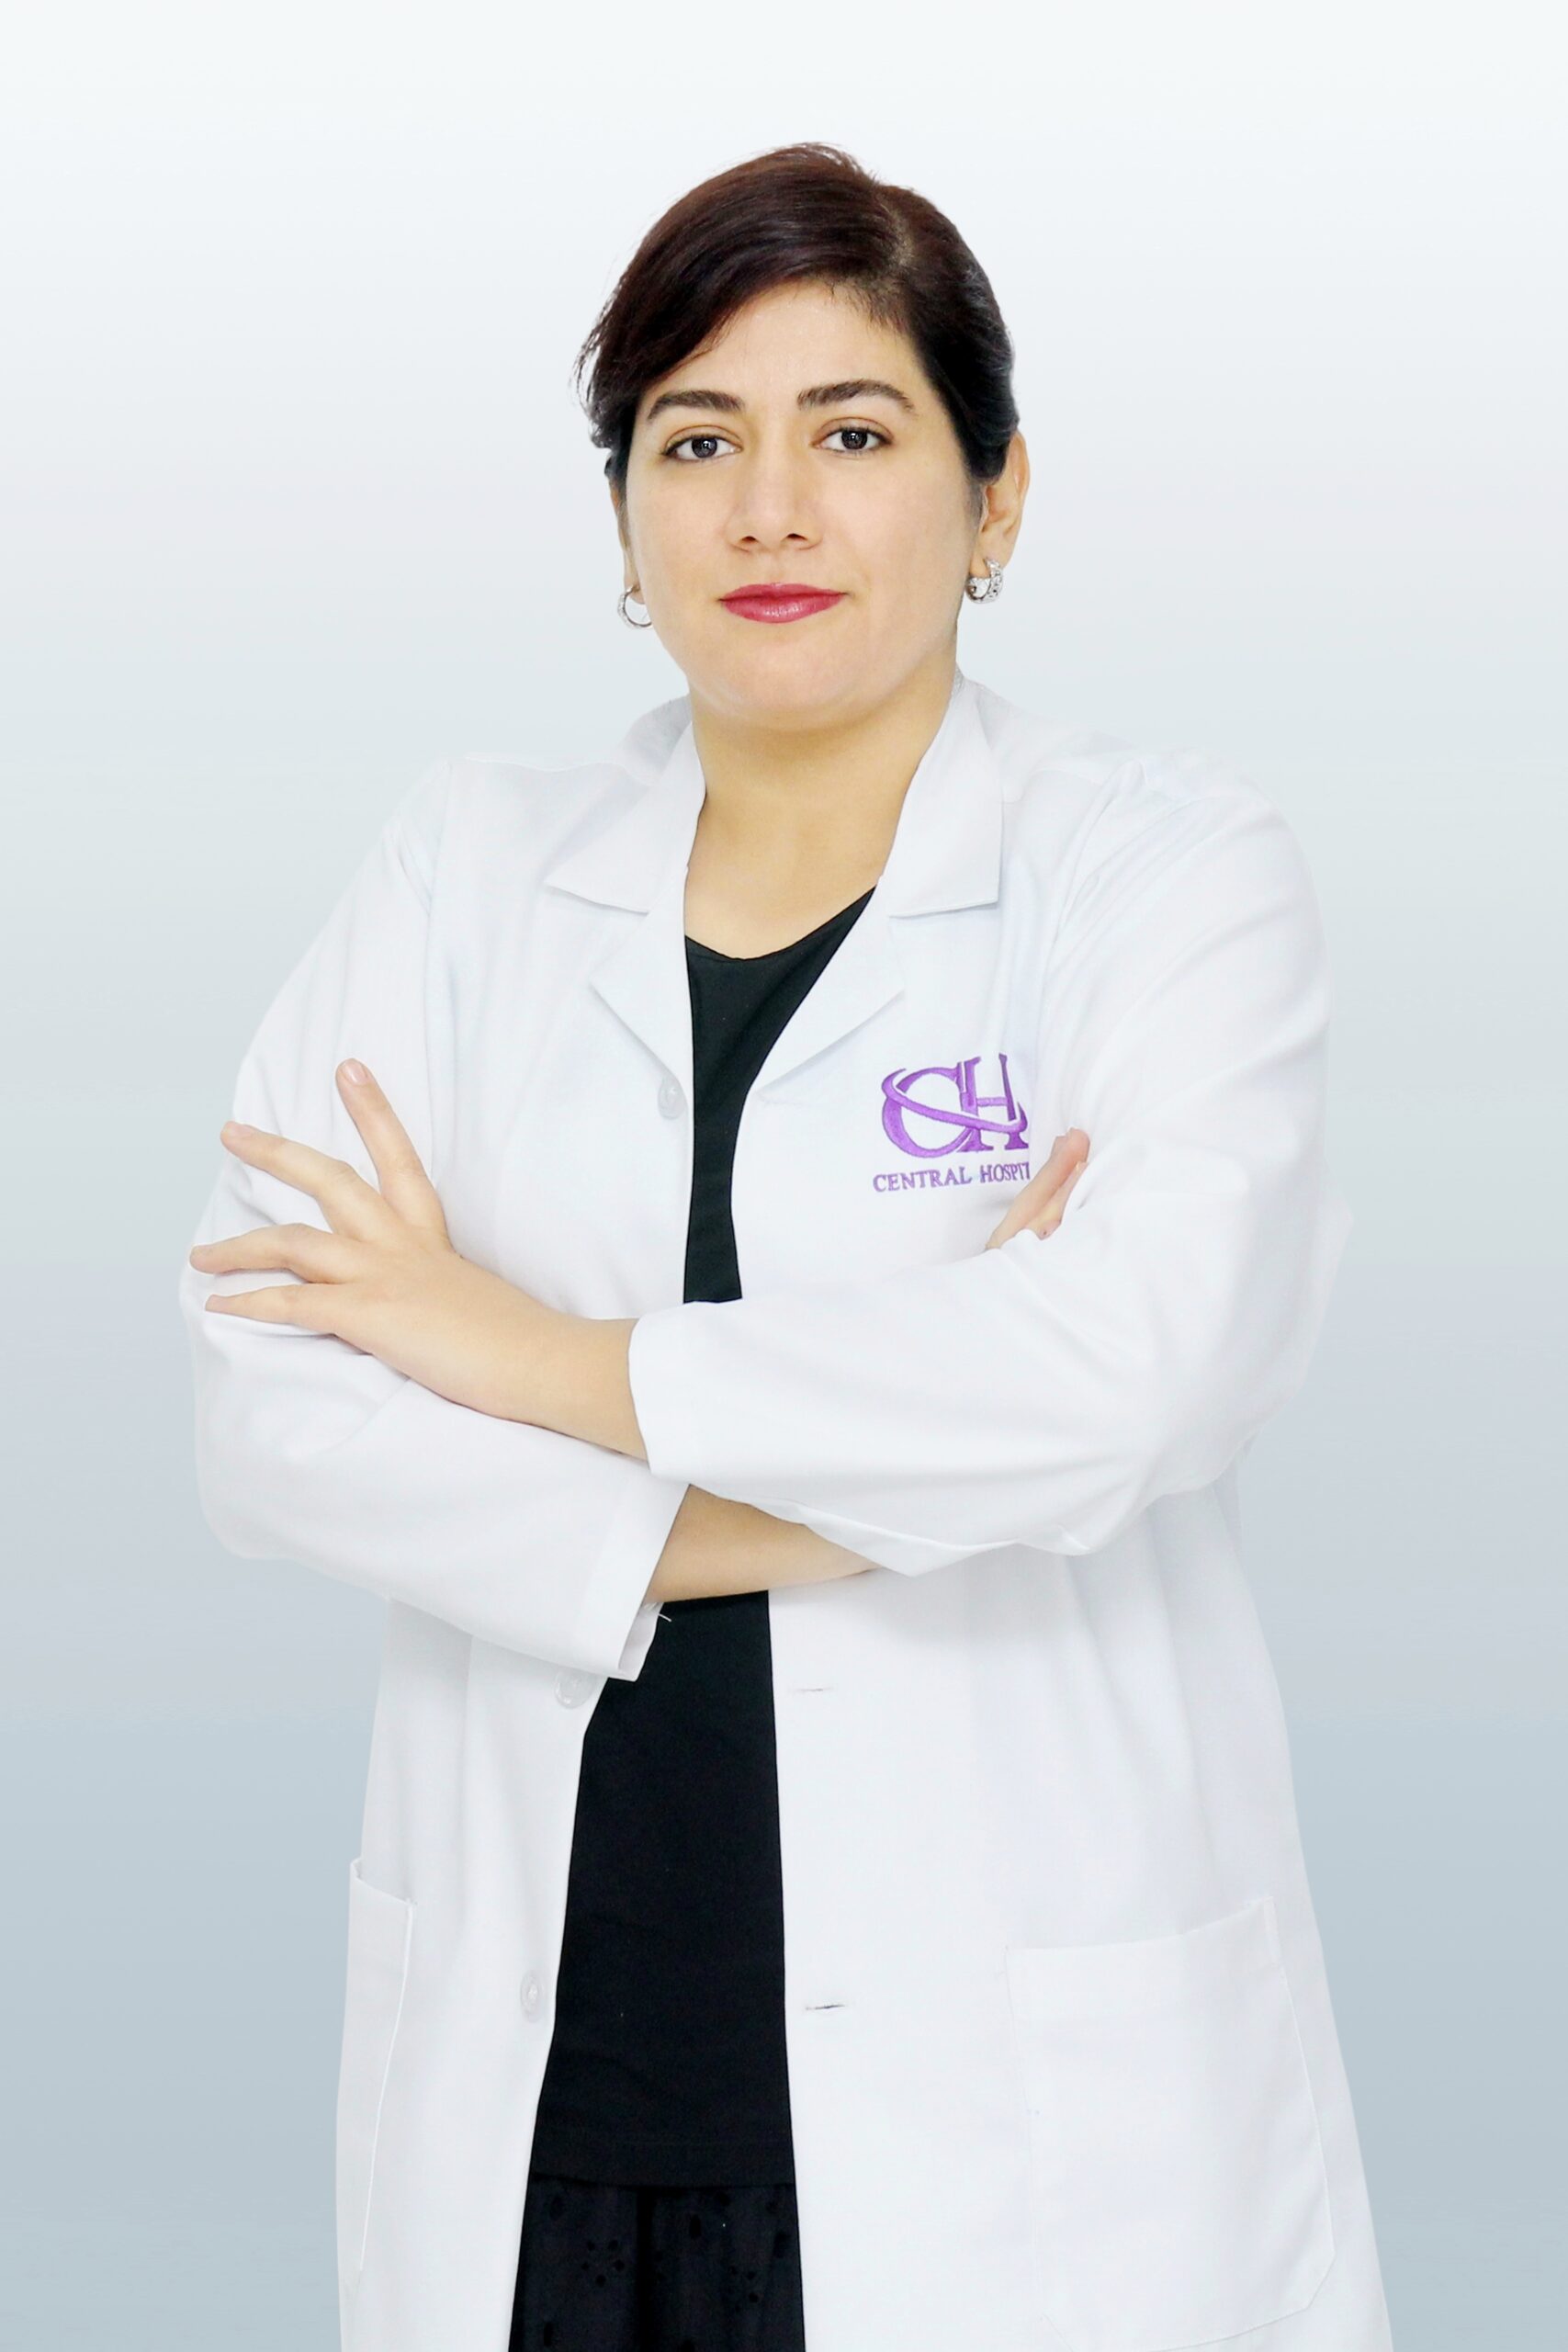 Dr. Aida Foroutan